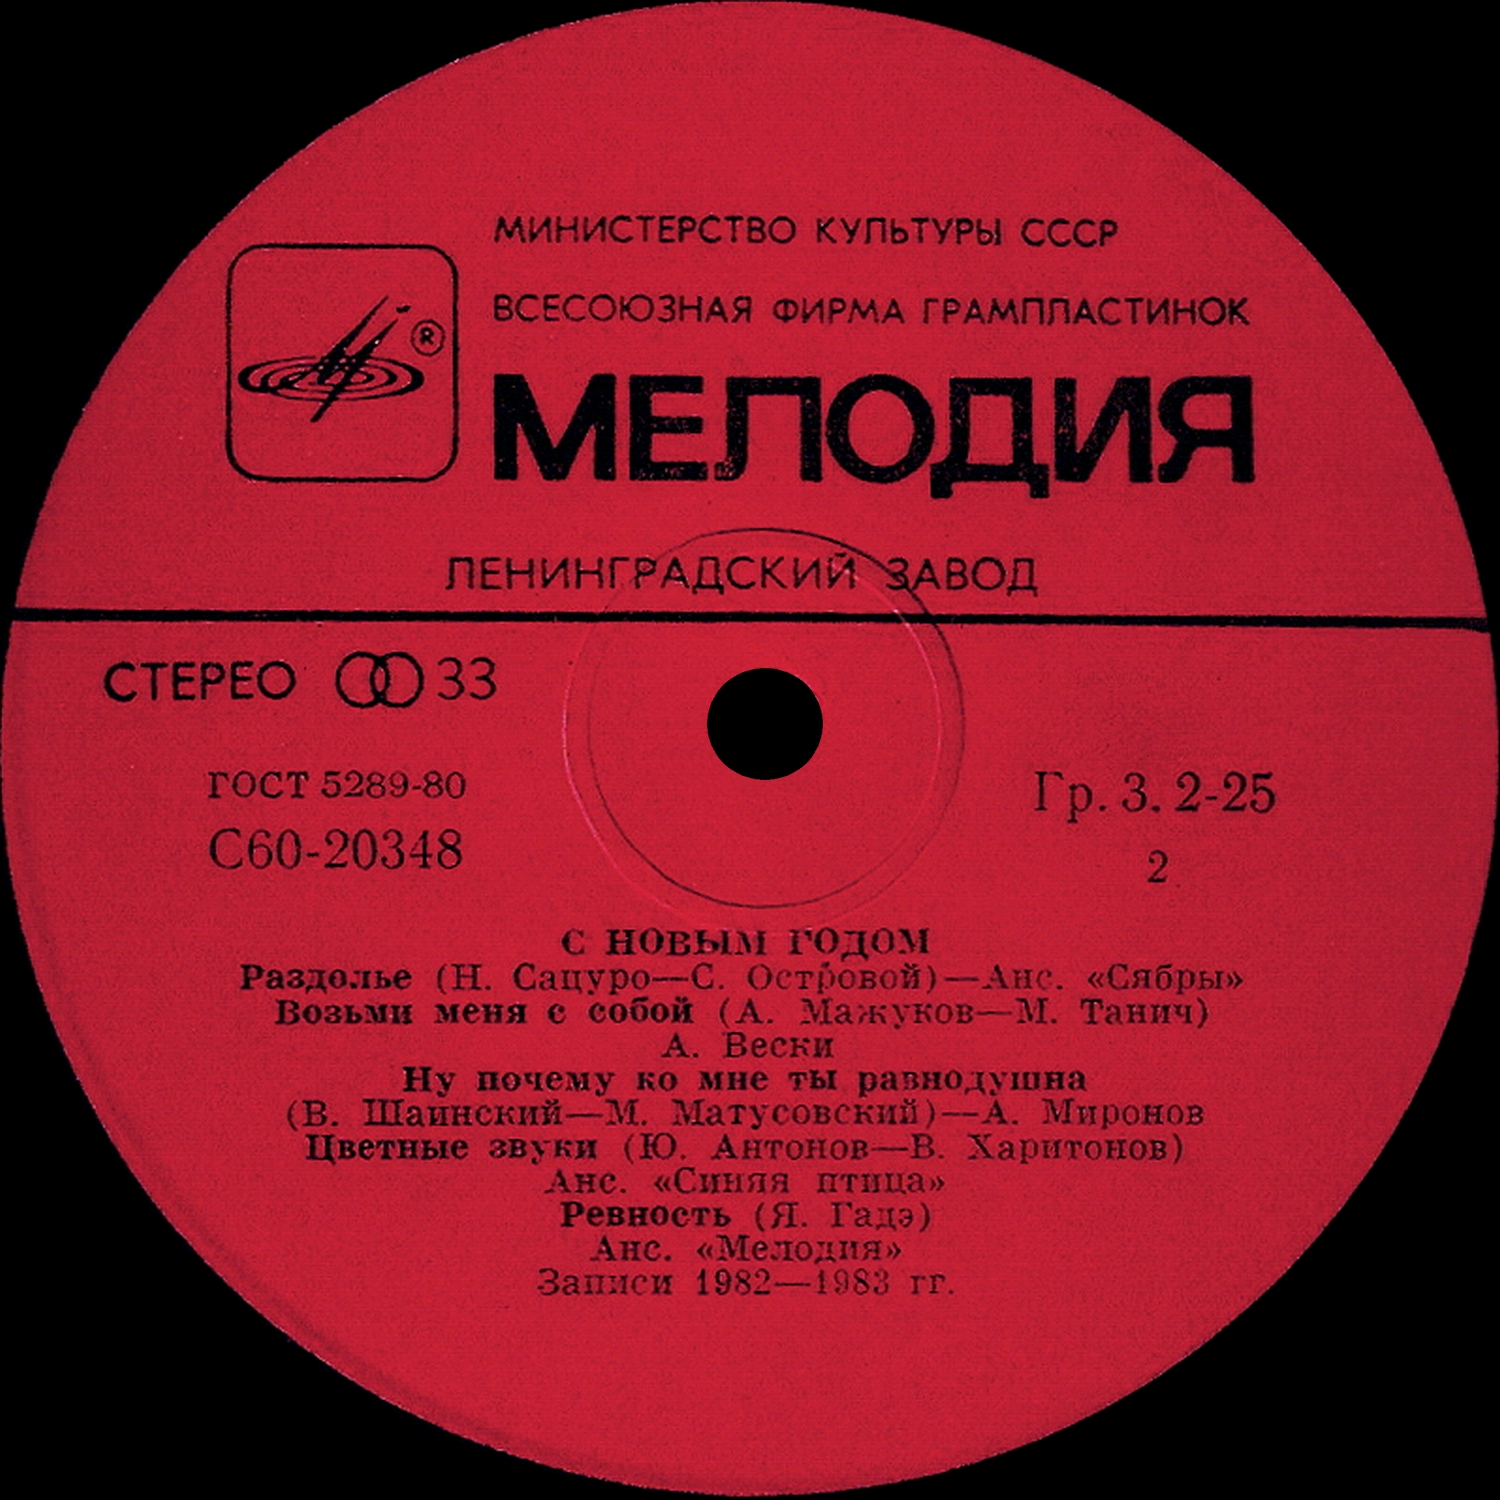 Вокальная сюита. Д. Голощекин - "джазовые композиции". Пластинка рок группы круиз картинки. Джанни Моранди пластинка.